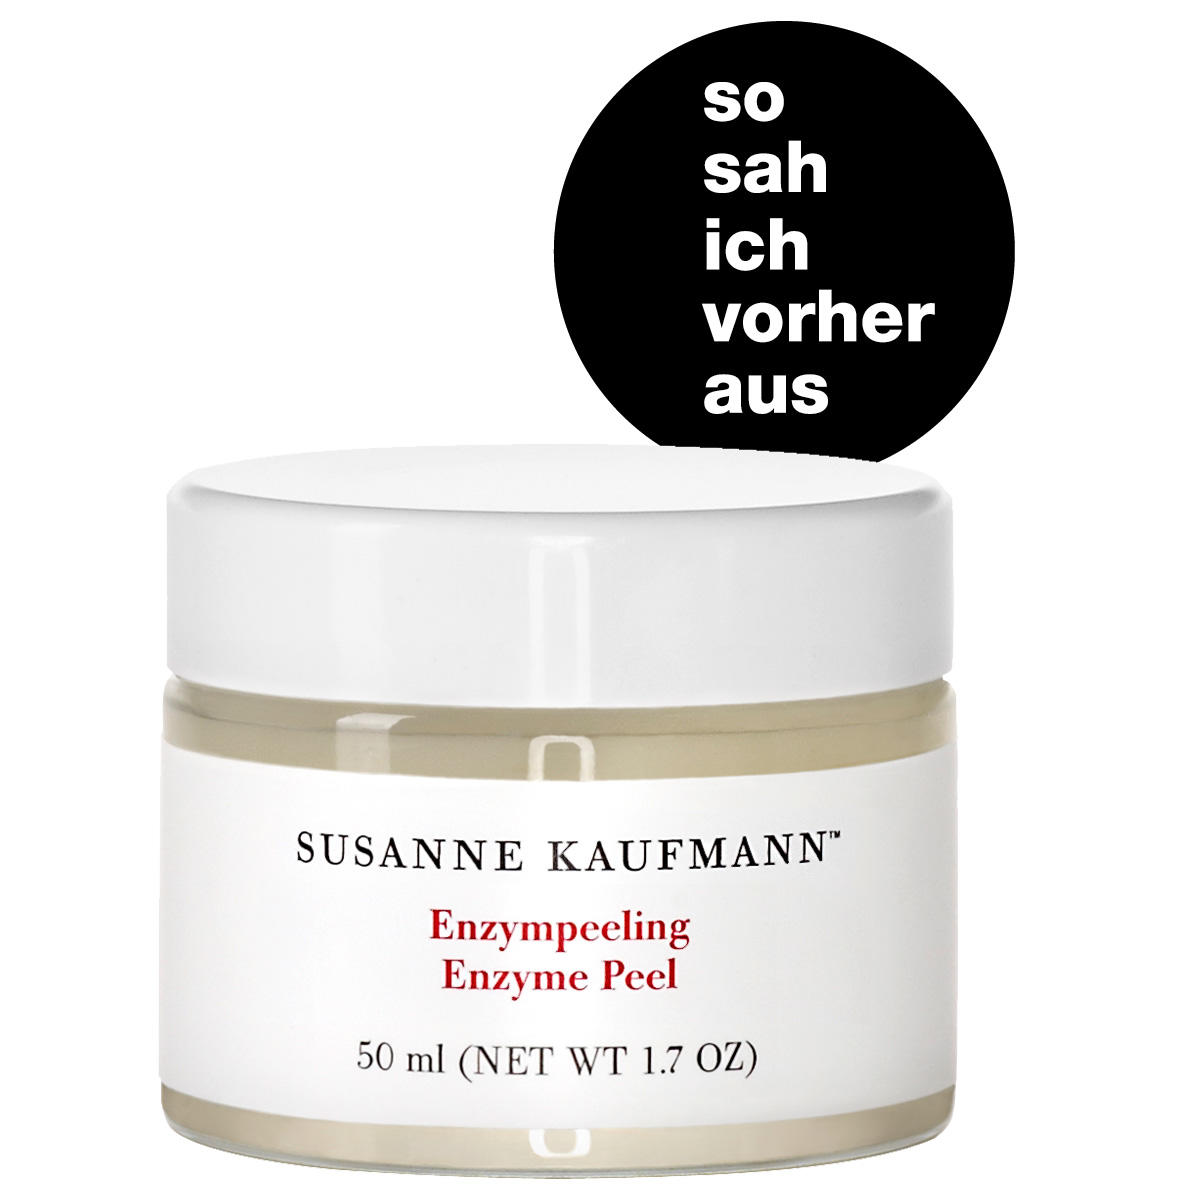 Susanne Kaufmann Enzymatische peeling 50 ml - 5